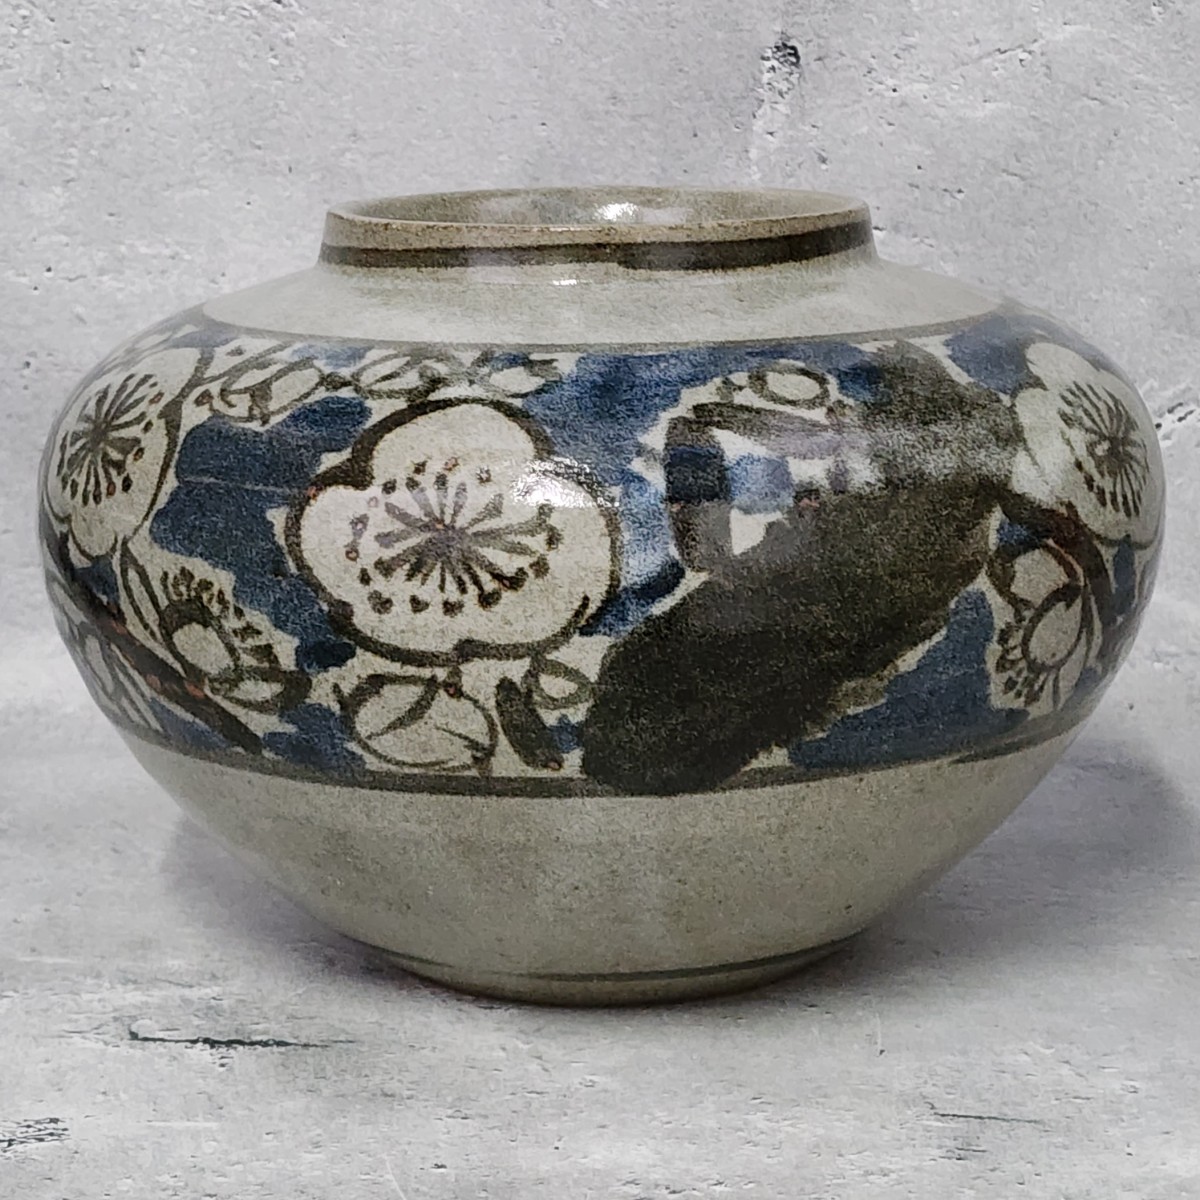 Kojin Kiln Plum Blossom Vase utilisé bon état / Mino Ware / Peint à la main / Vase / Vase à fleurs / Vase / Urne / Céramique /, céramique japonaise, La céramique en général, autres